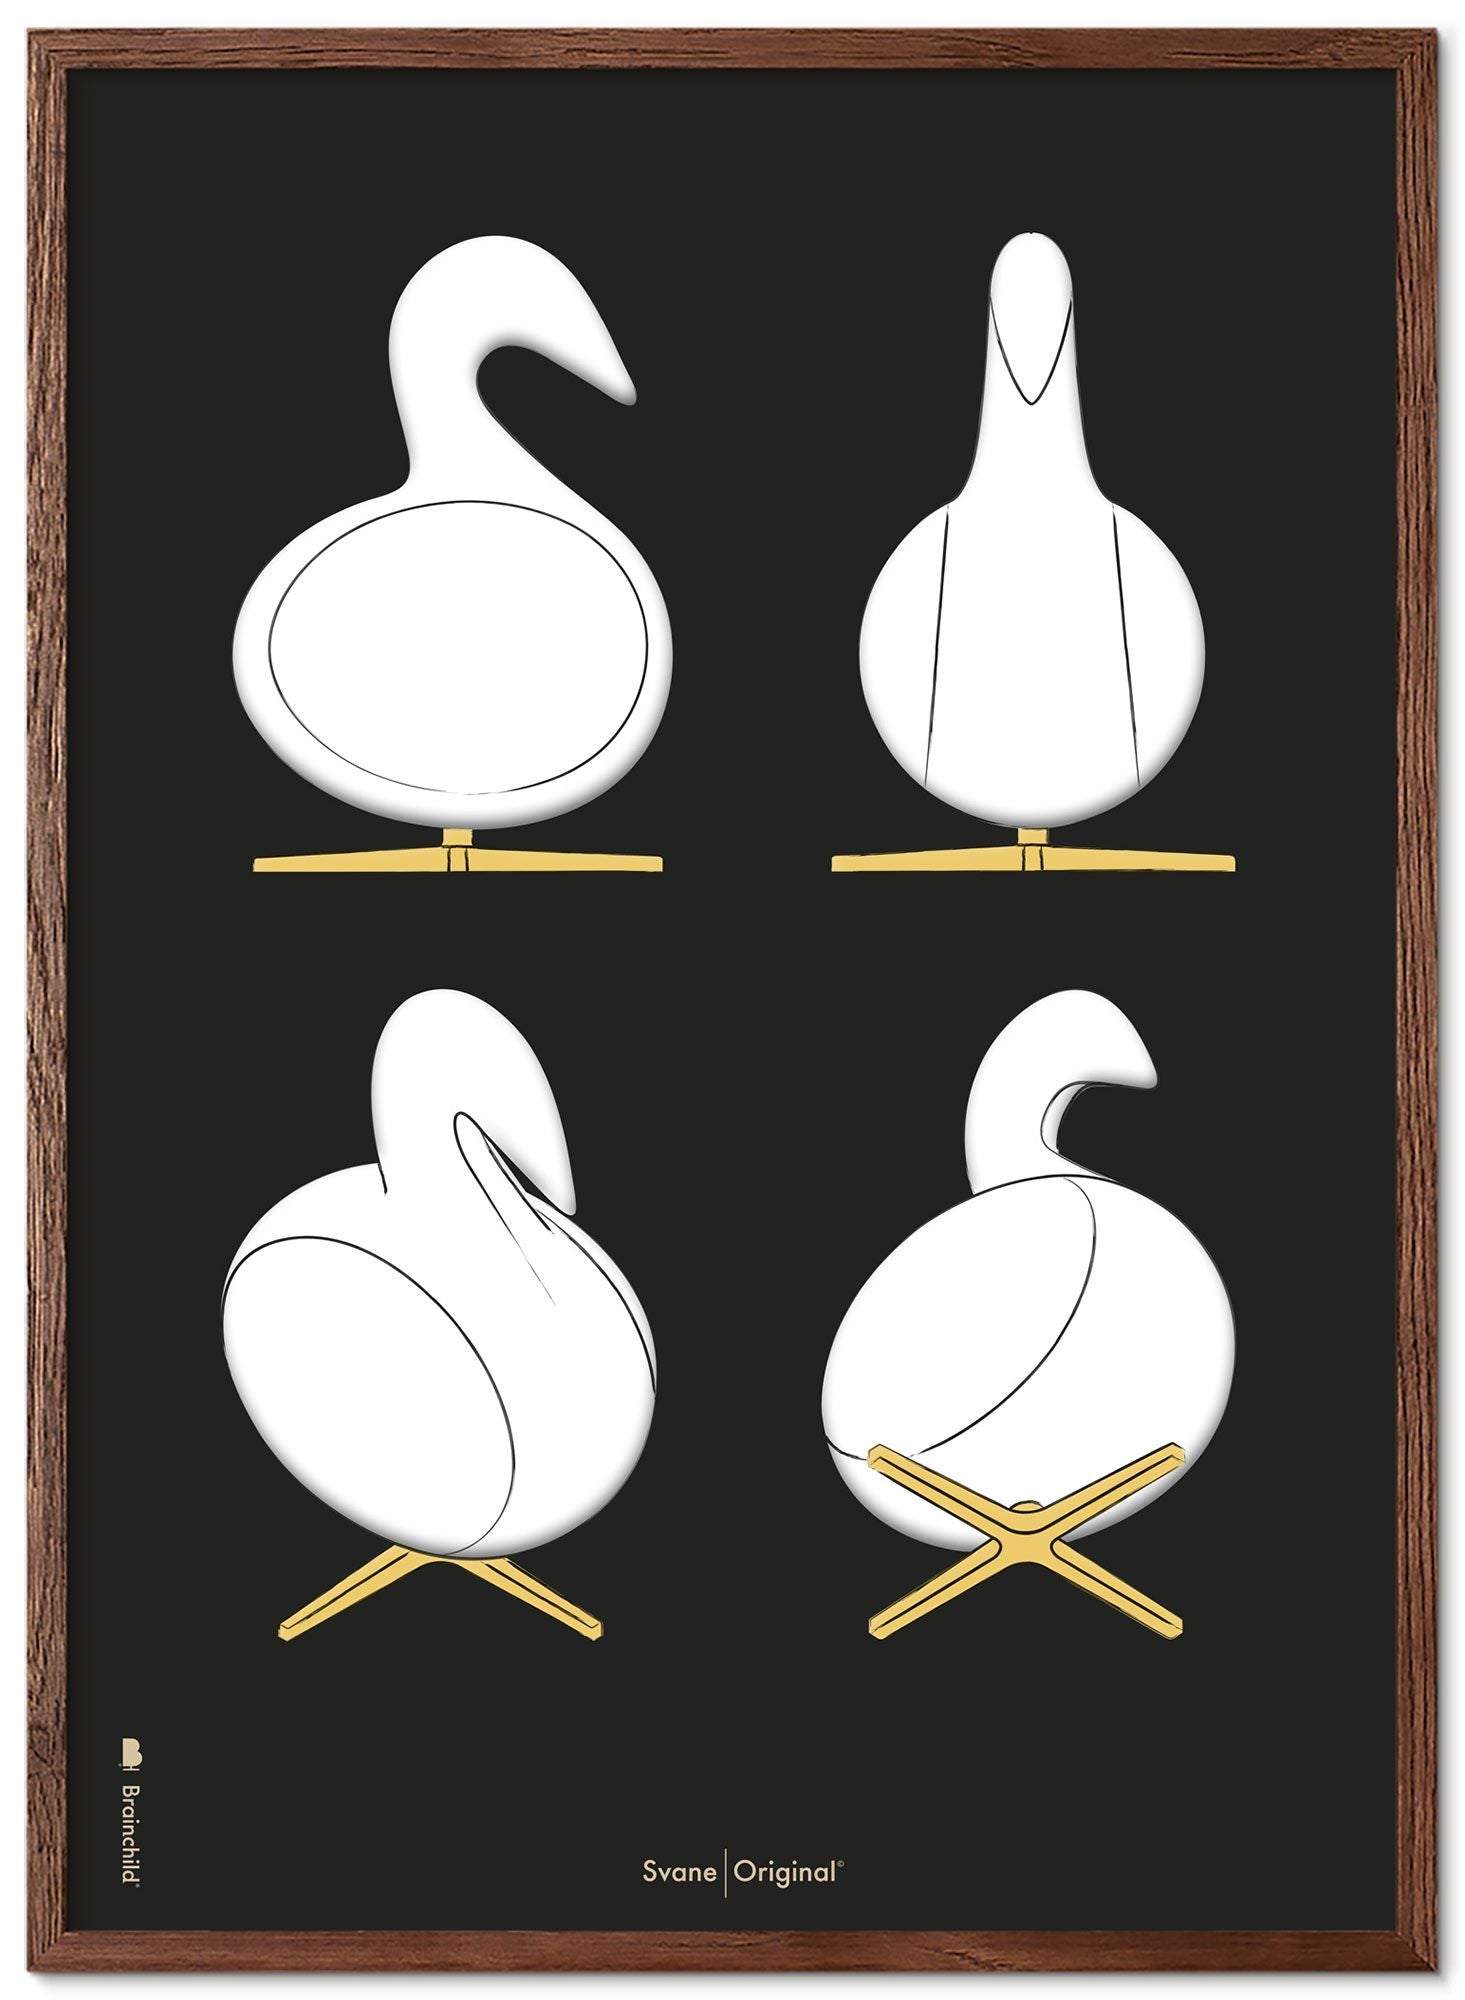 Brainchild Swan Design Sketches Poster Frame lavet af Dark Wood 70x100 cm, sort baggrund